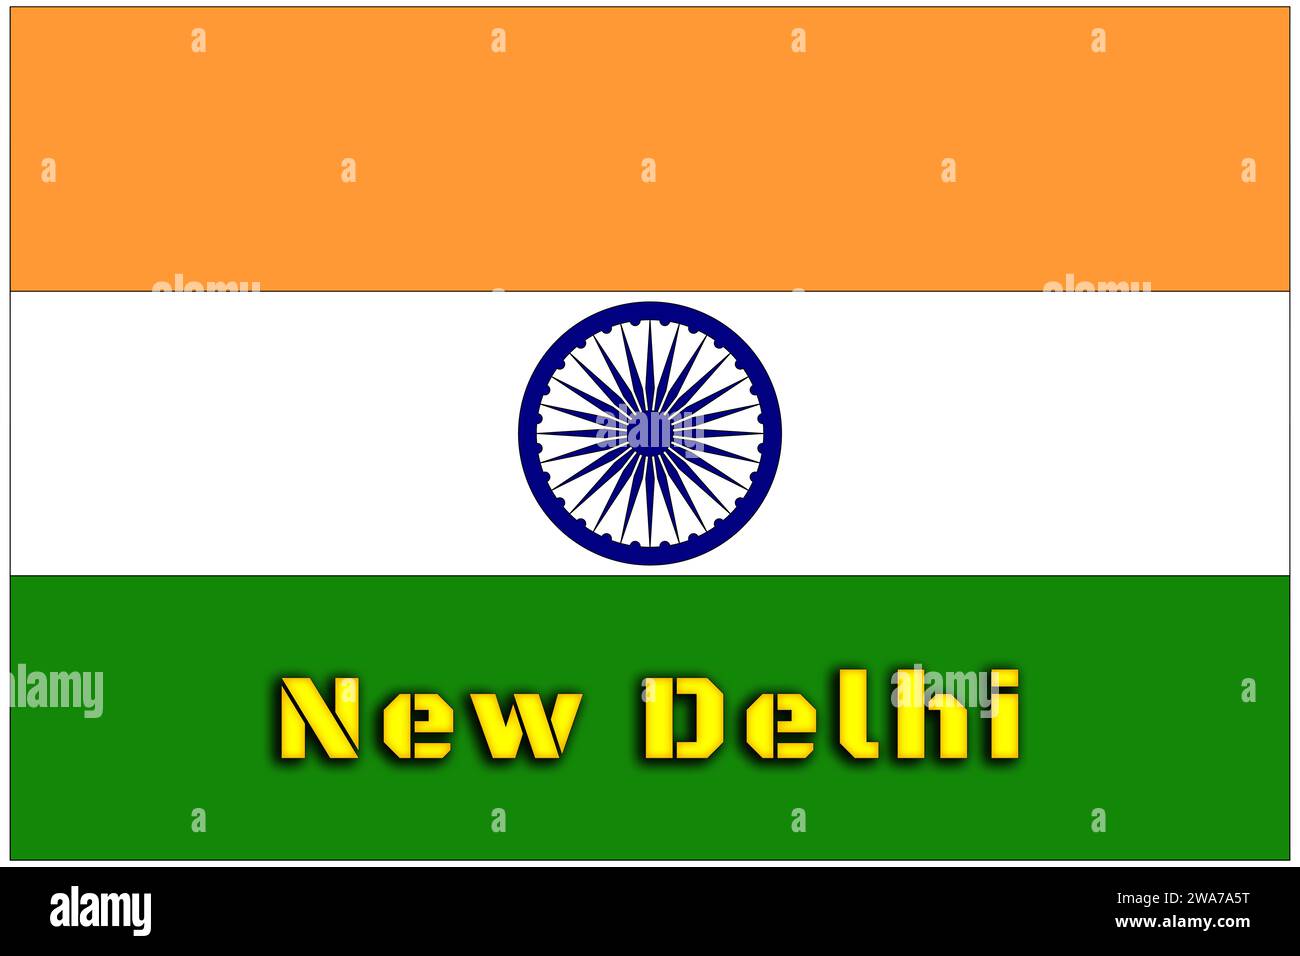 Inde, drapeau indien avec le nom de la capitale de New Delhi, le drapeau avec les proportions officielles correctes et les couleurs. Banque D'Images